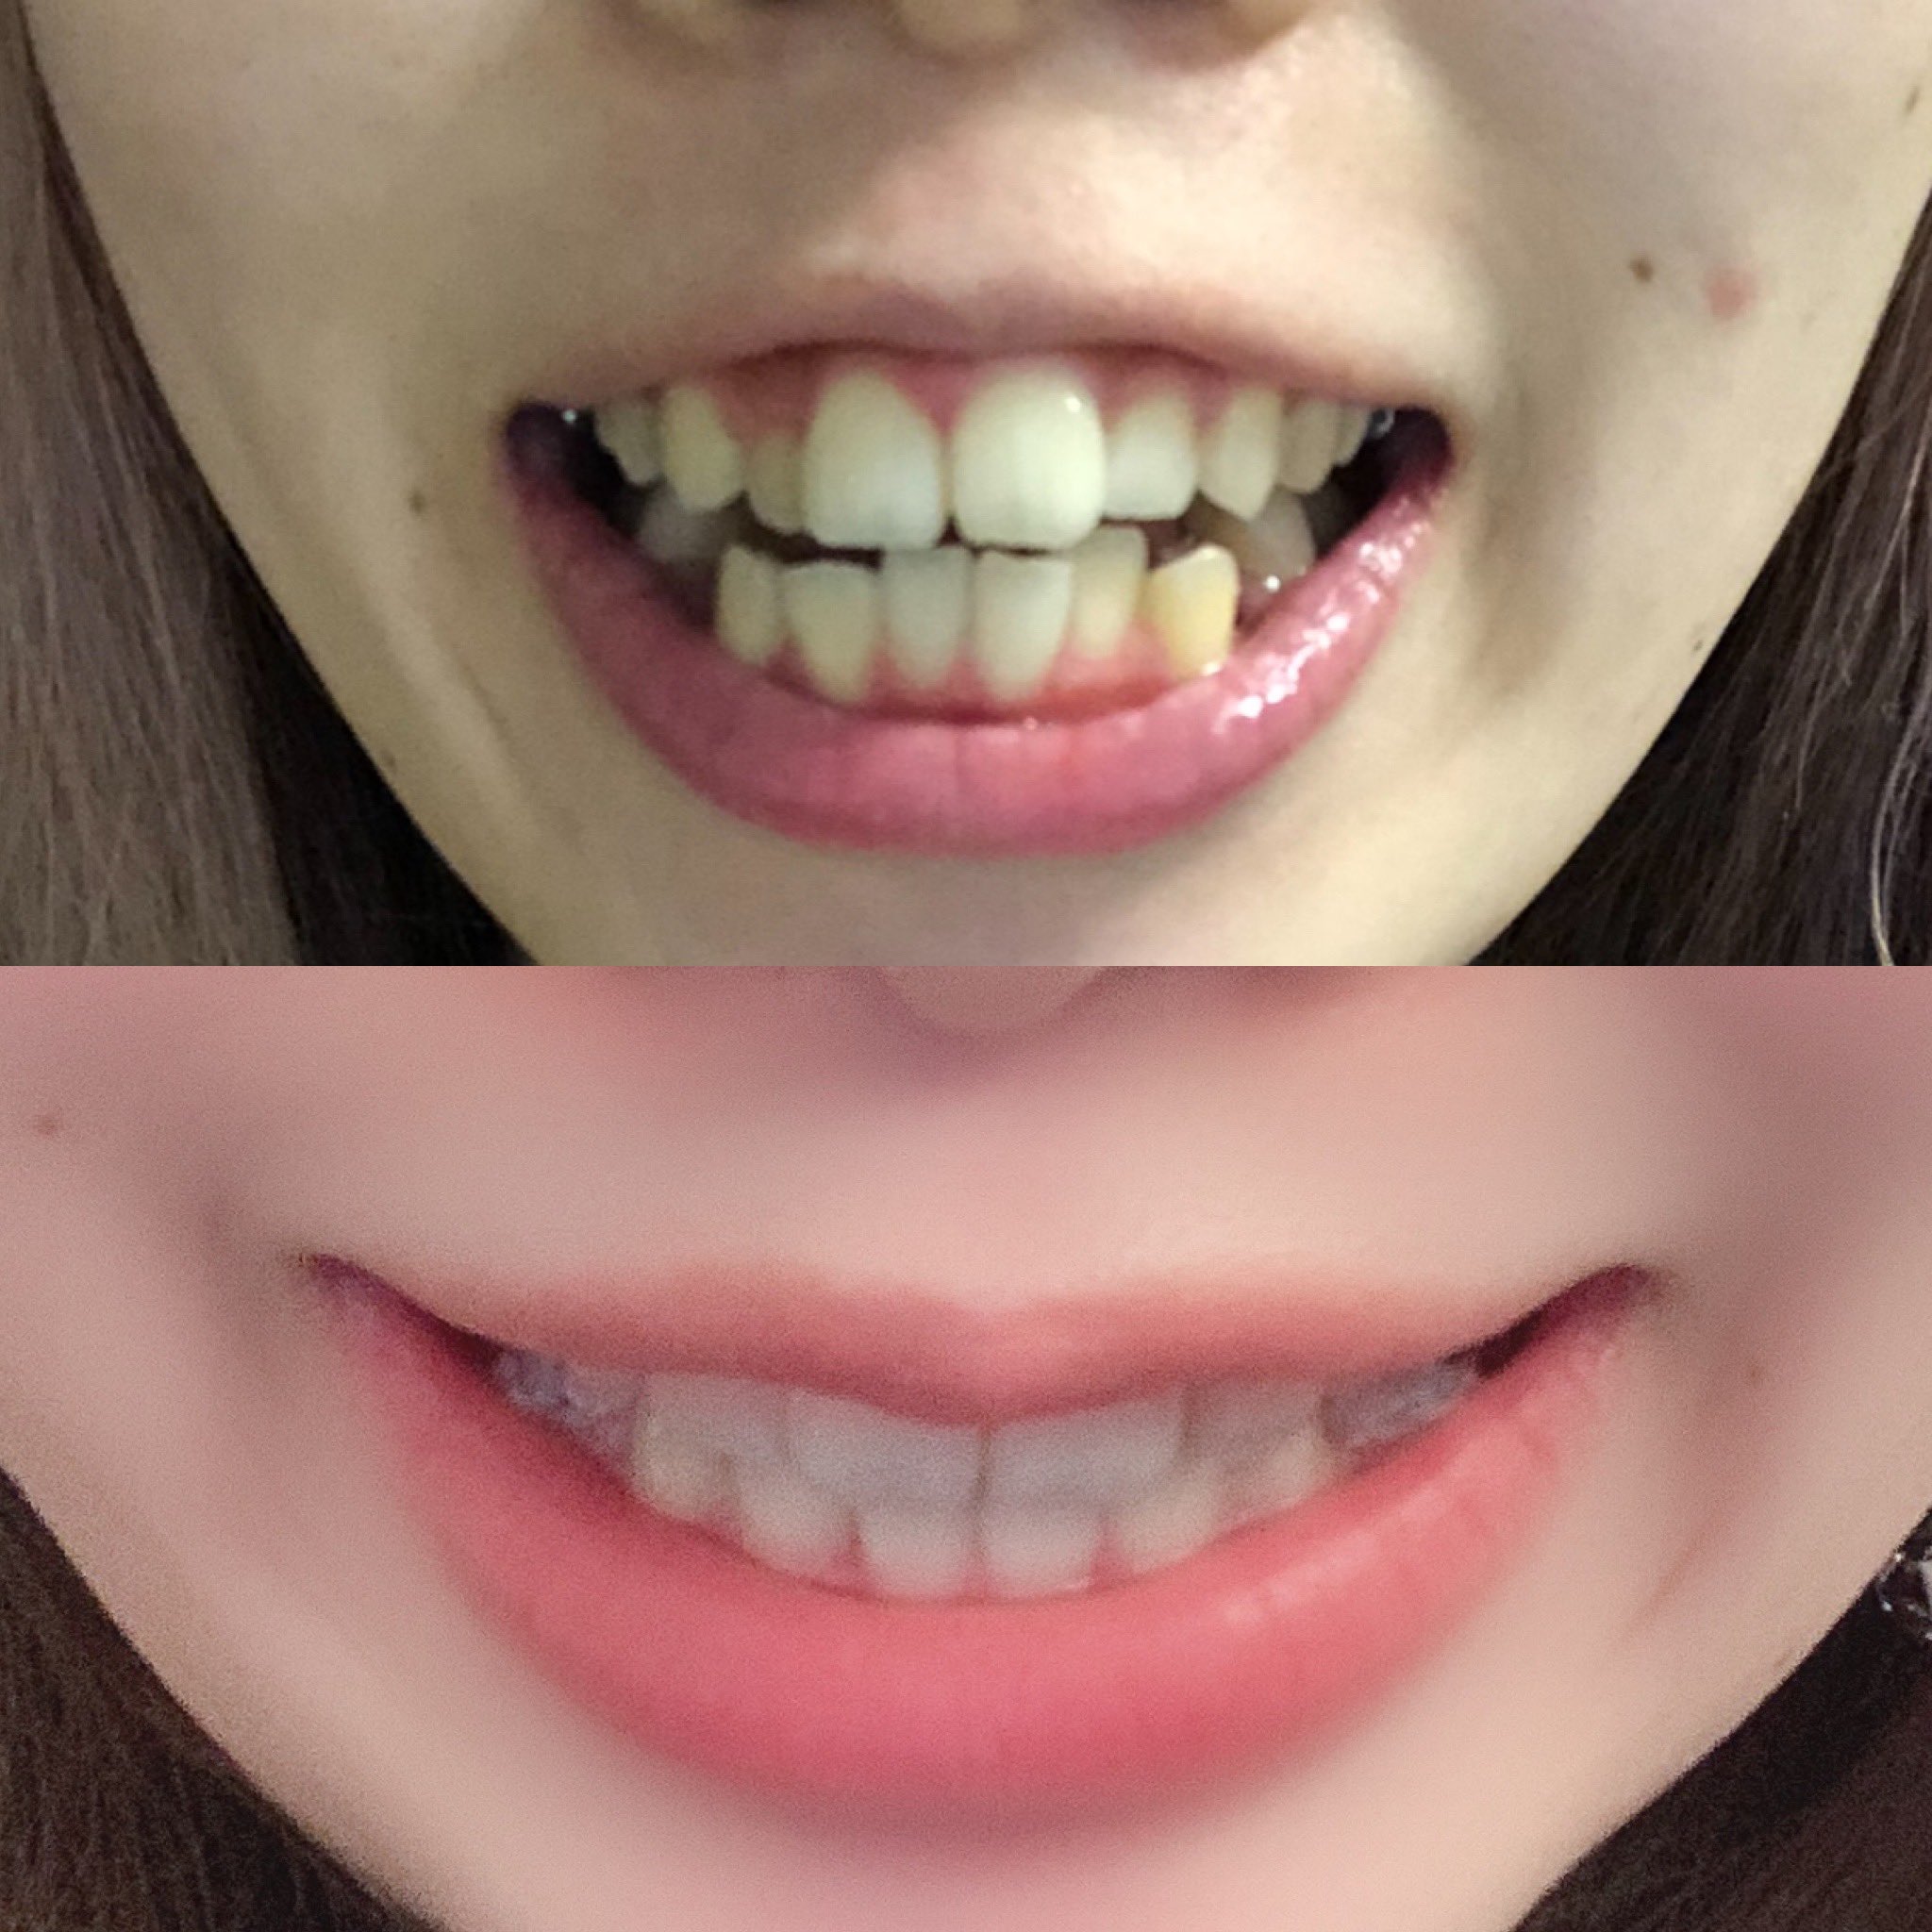 歯 列 矯正 どれくらい で 変化